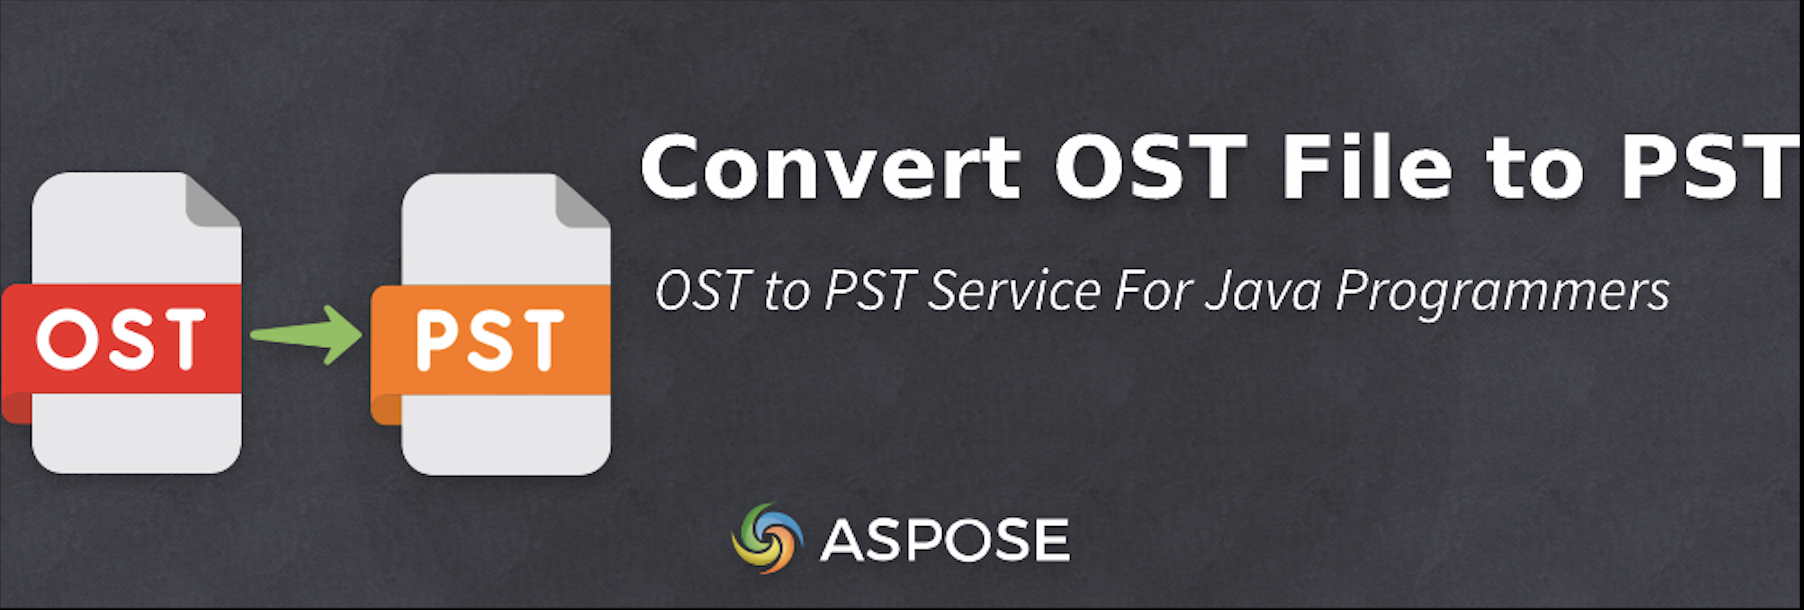 Konvertieren Sie OST Dateien in Java in PST - Kostenloser OST zu PST-Konverter